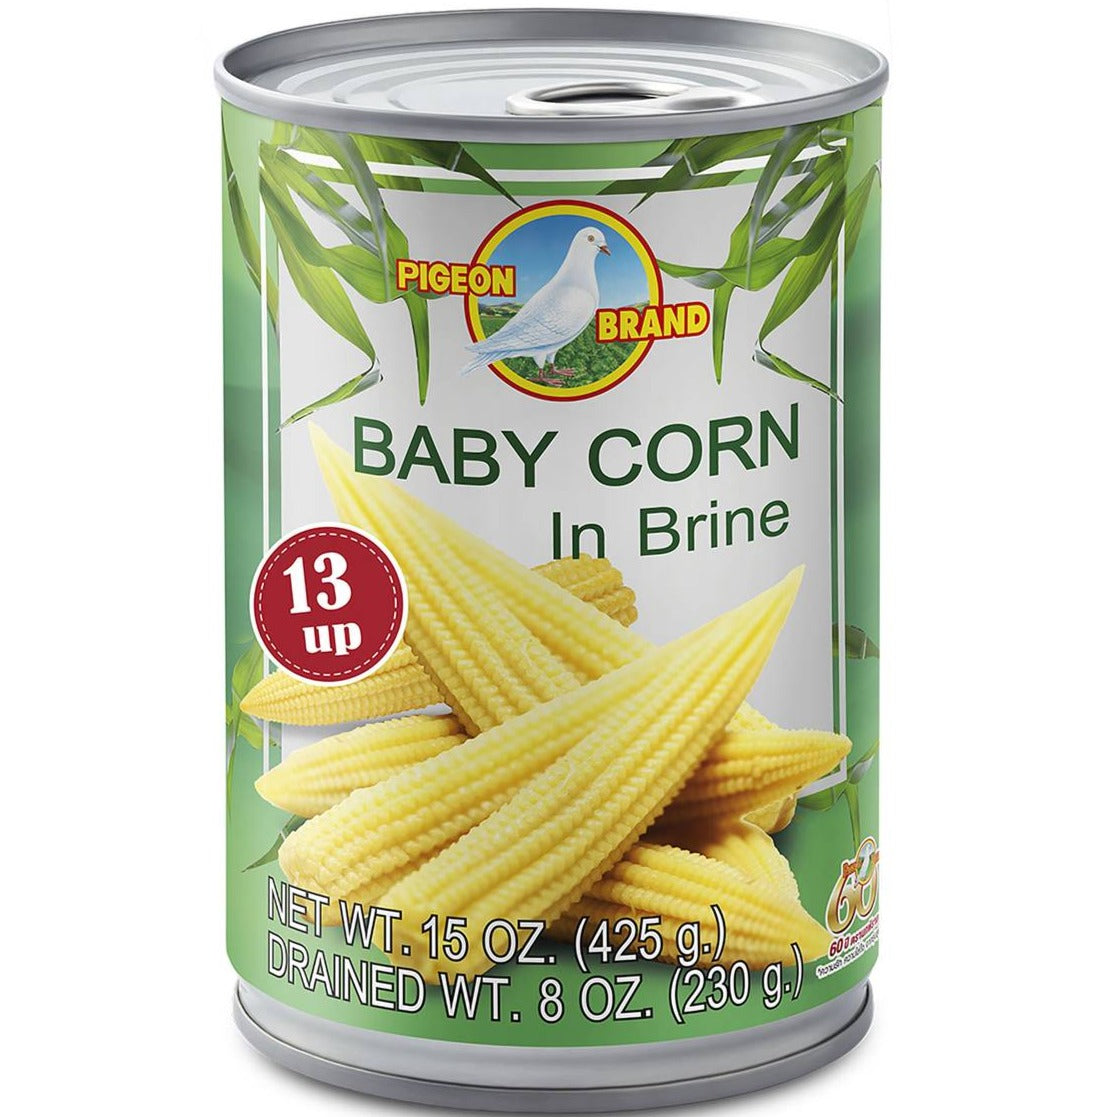 Pigeon Brand Baby Corn in Brine